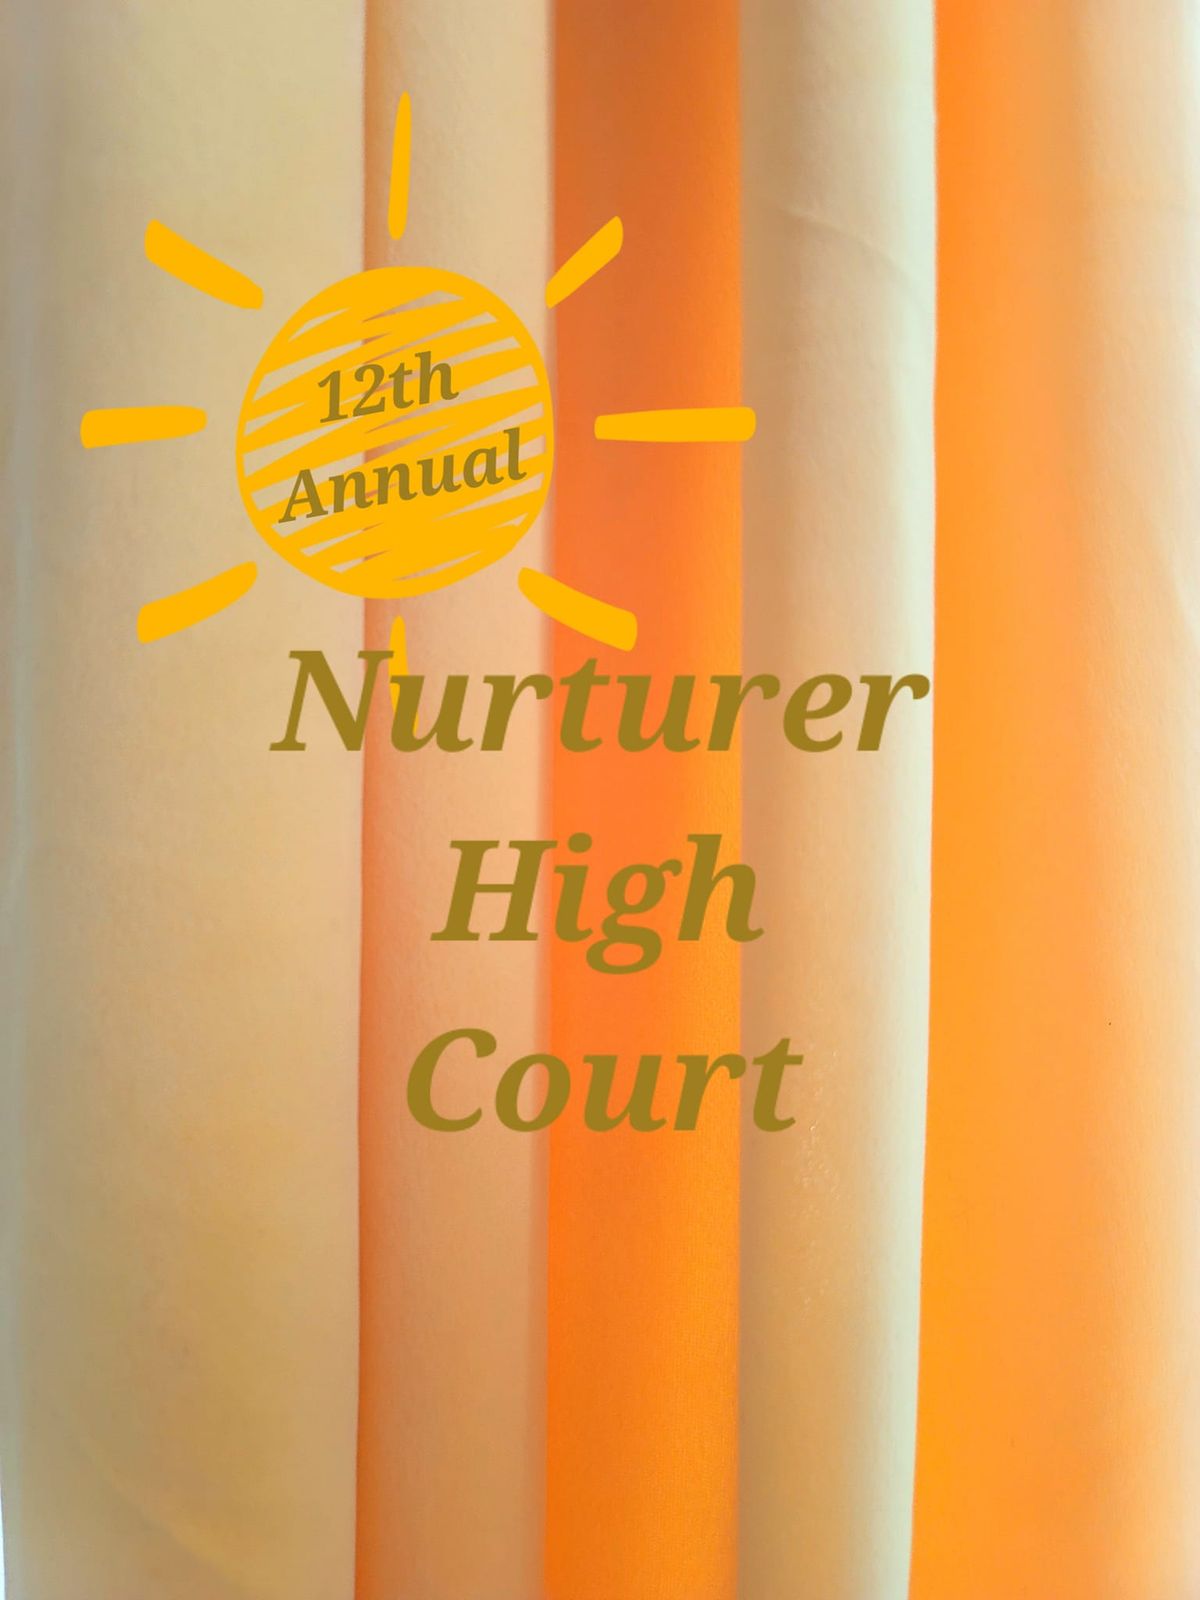 Nurturer High Court